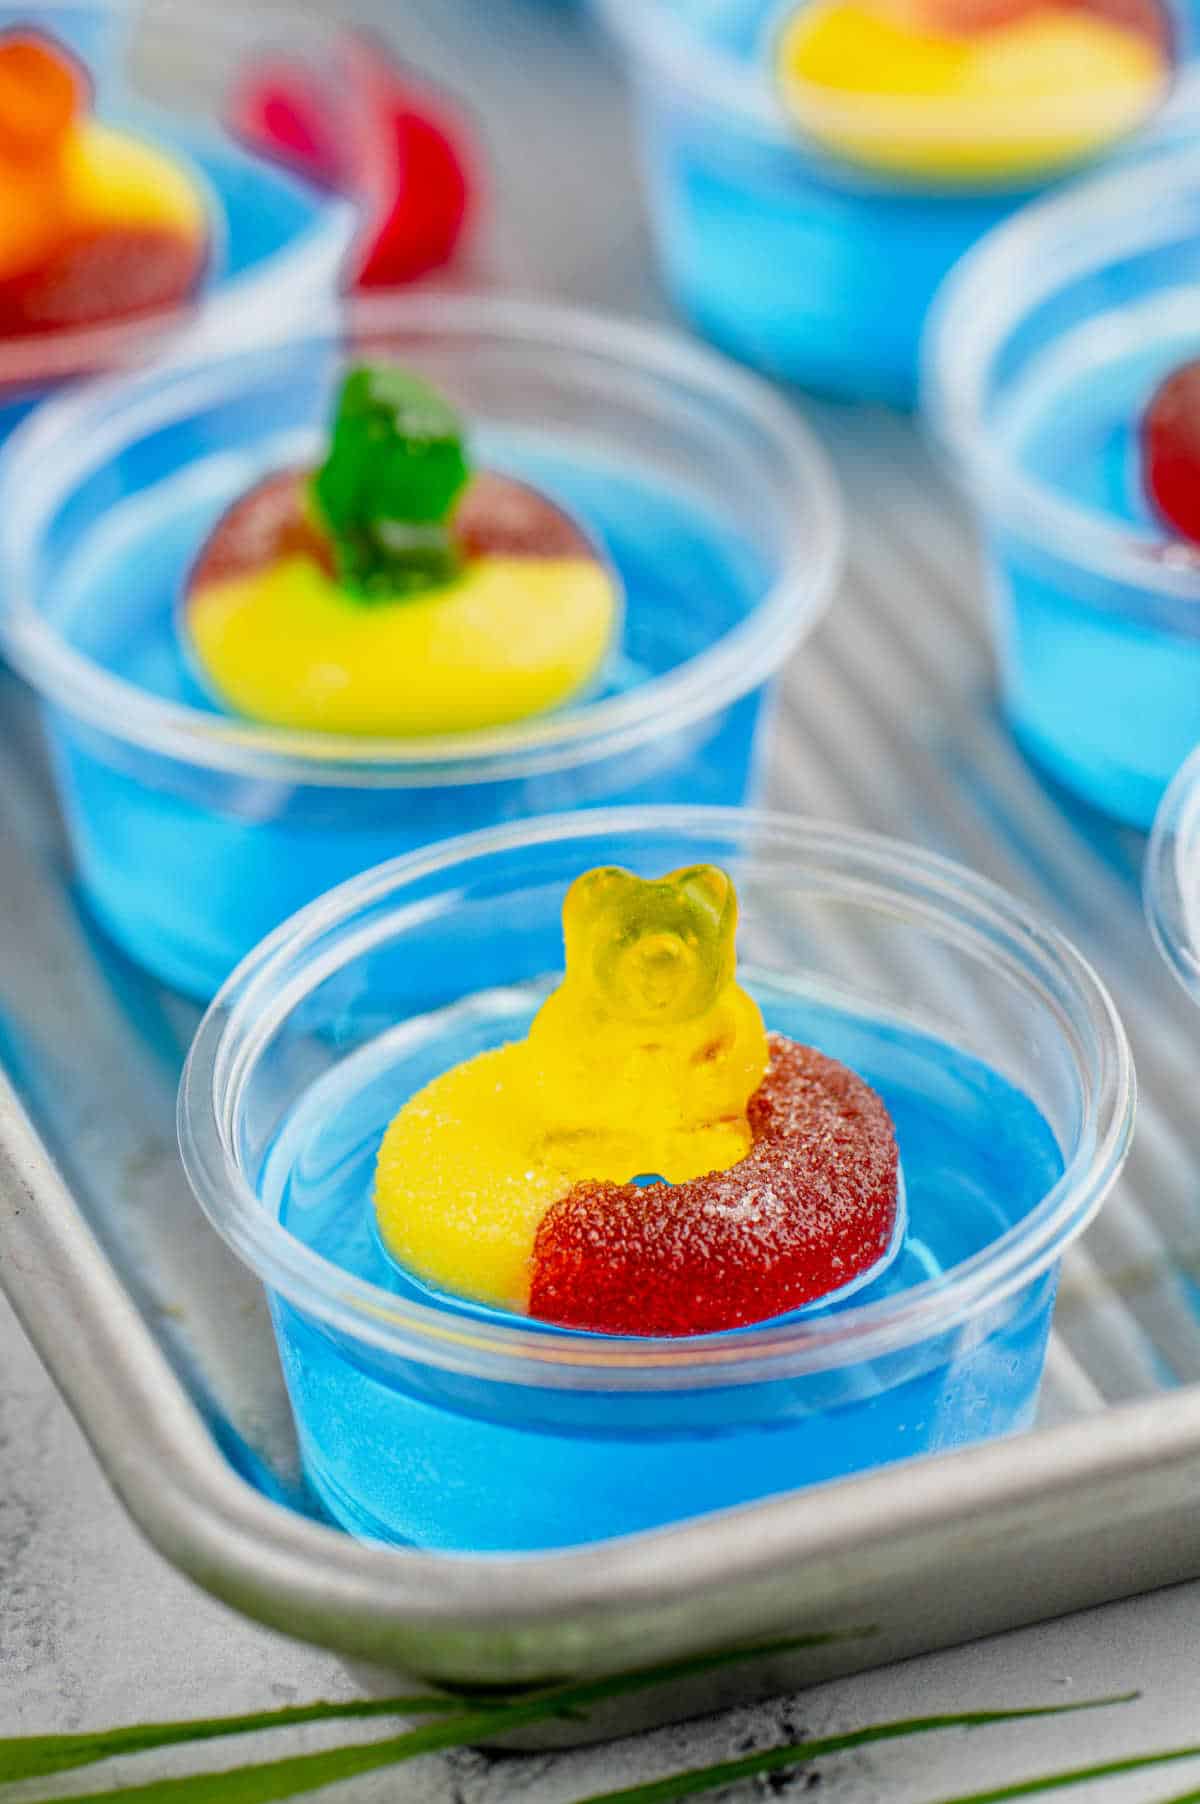 Pool party jello shots on a baking tray.